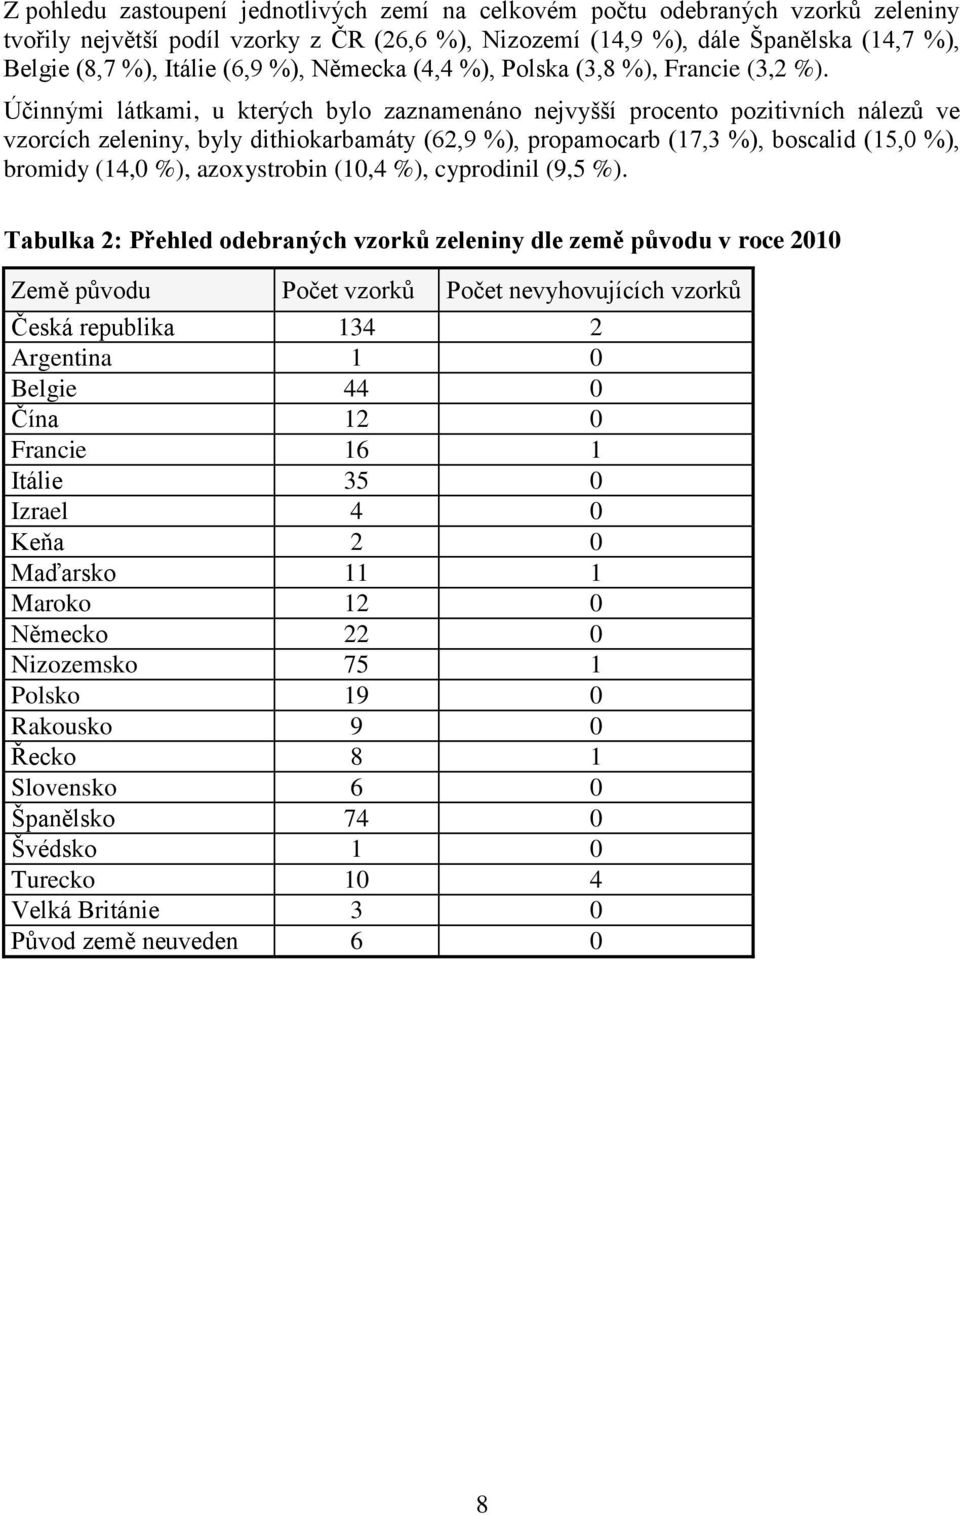 Účinnými látkami, u kterých bylo zaznamenáno nejvyšší procento pozitivních nálezů ve vzorcích zeleniny, byly dithiokarbamáty (62,9 %), propamocarb (17,3 %), boscalid (15,0 %), bromidy (14,0 %),